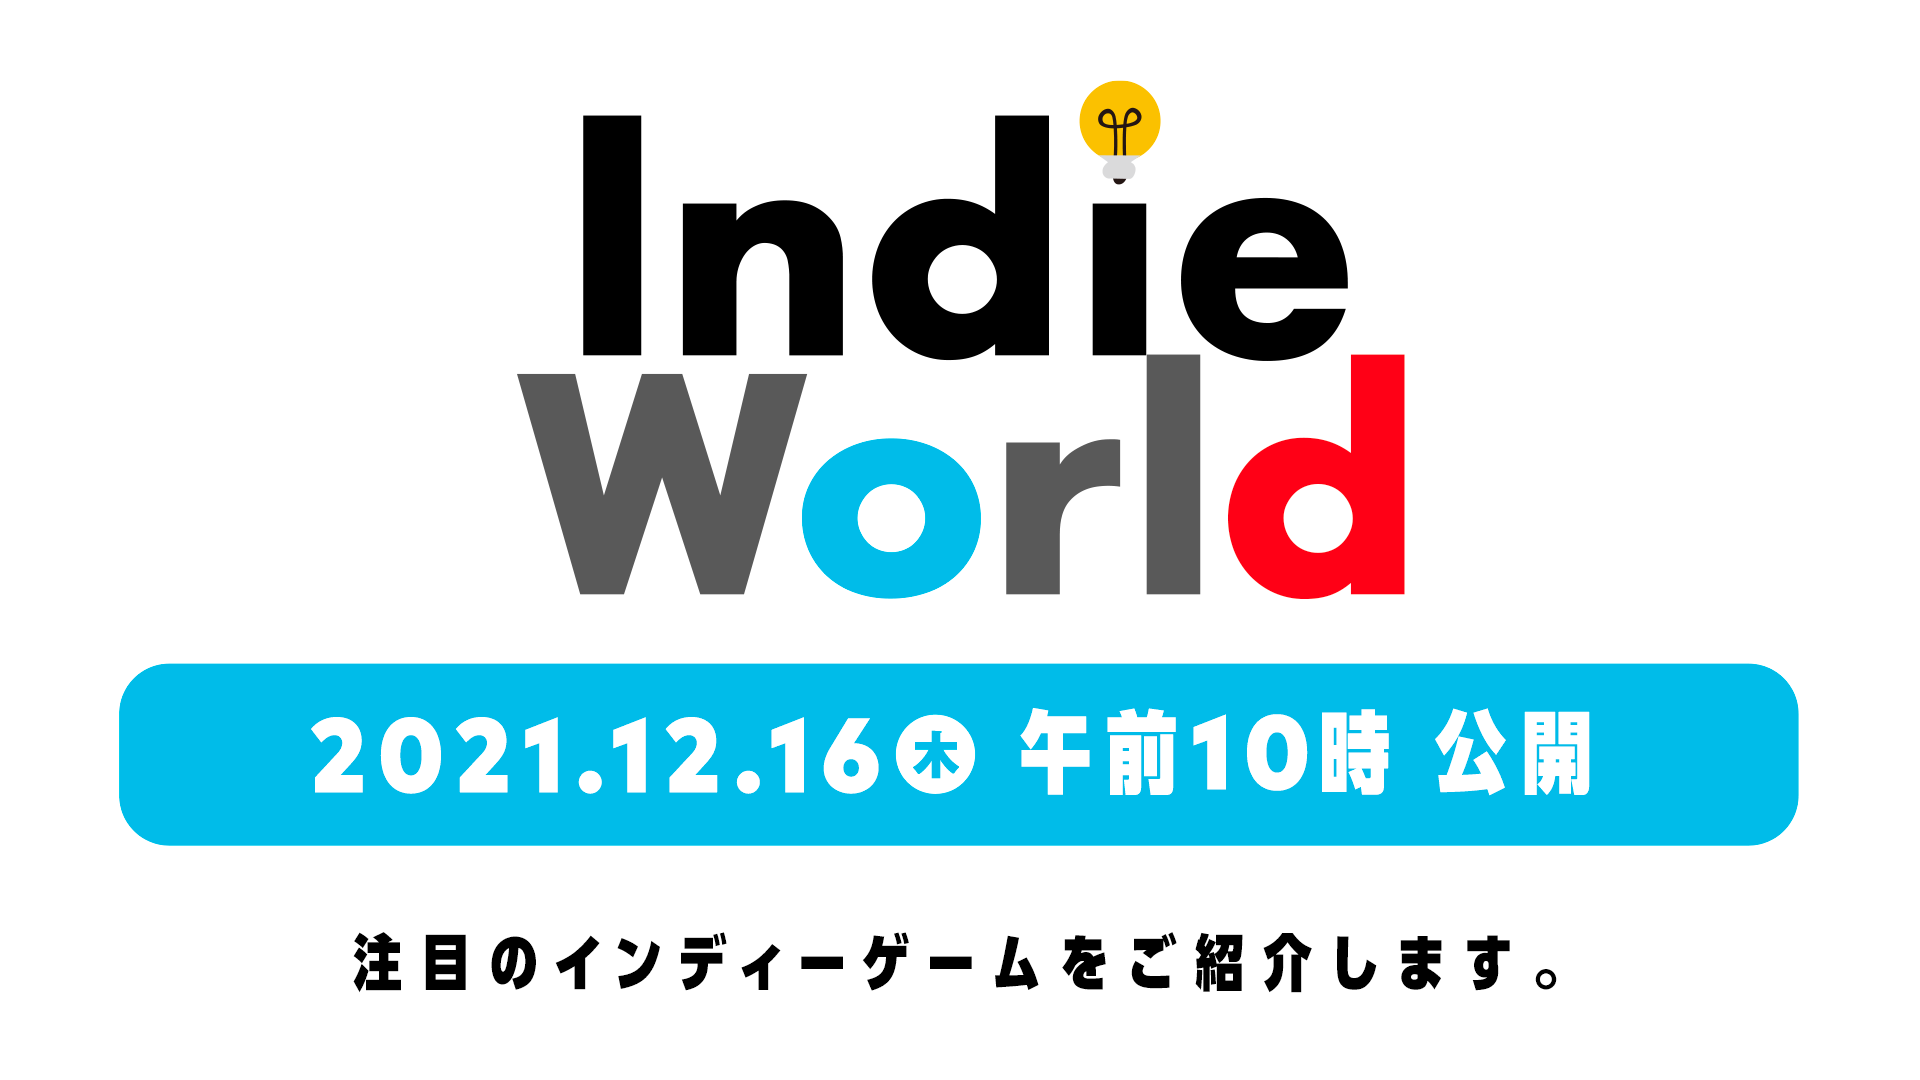 任天堂獨立遊戲直播發表會12 16 9 00 登場帶來switch 注目獨立遊戲介紹 巴哈姆特